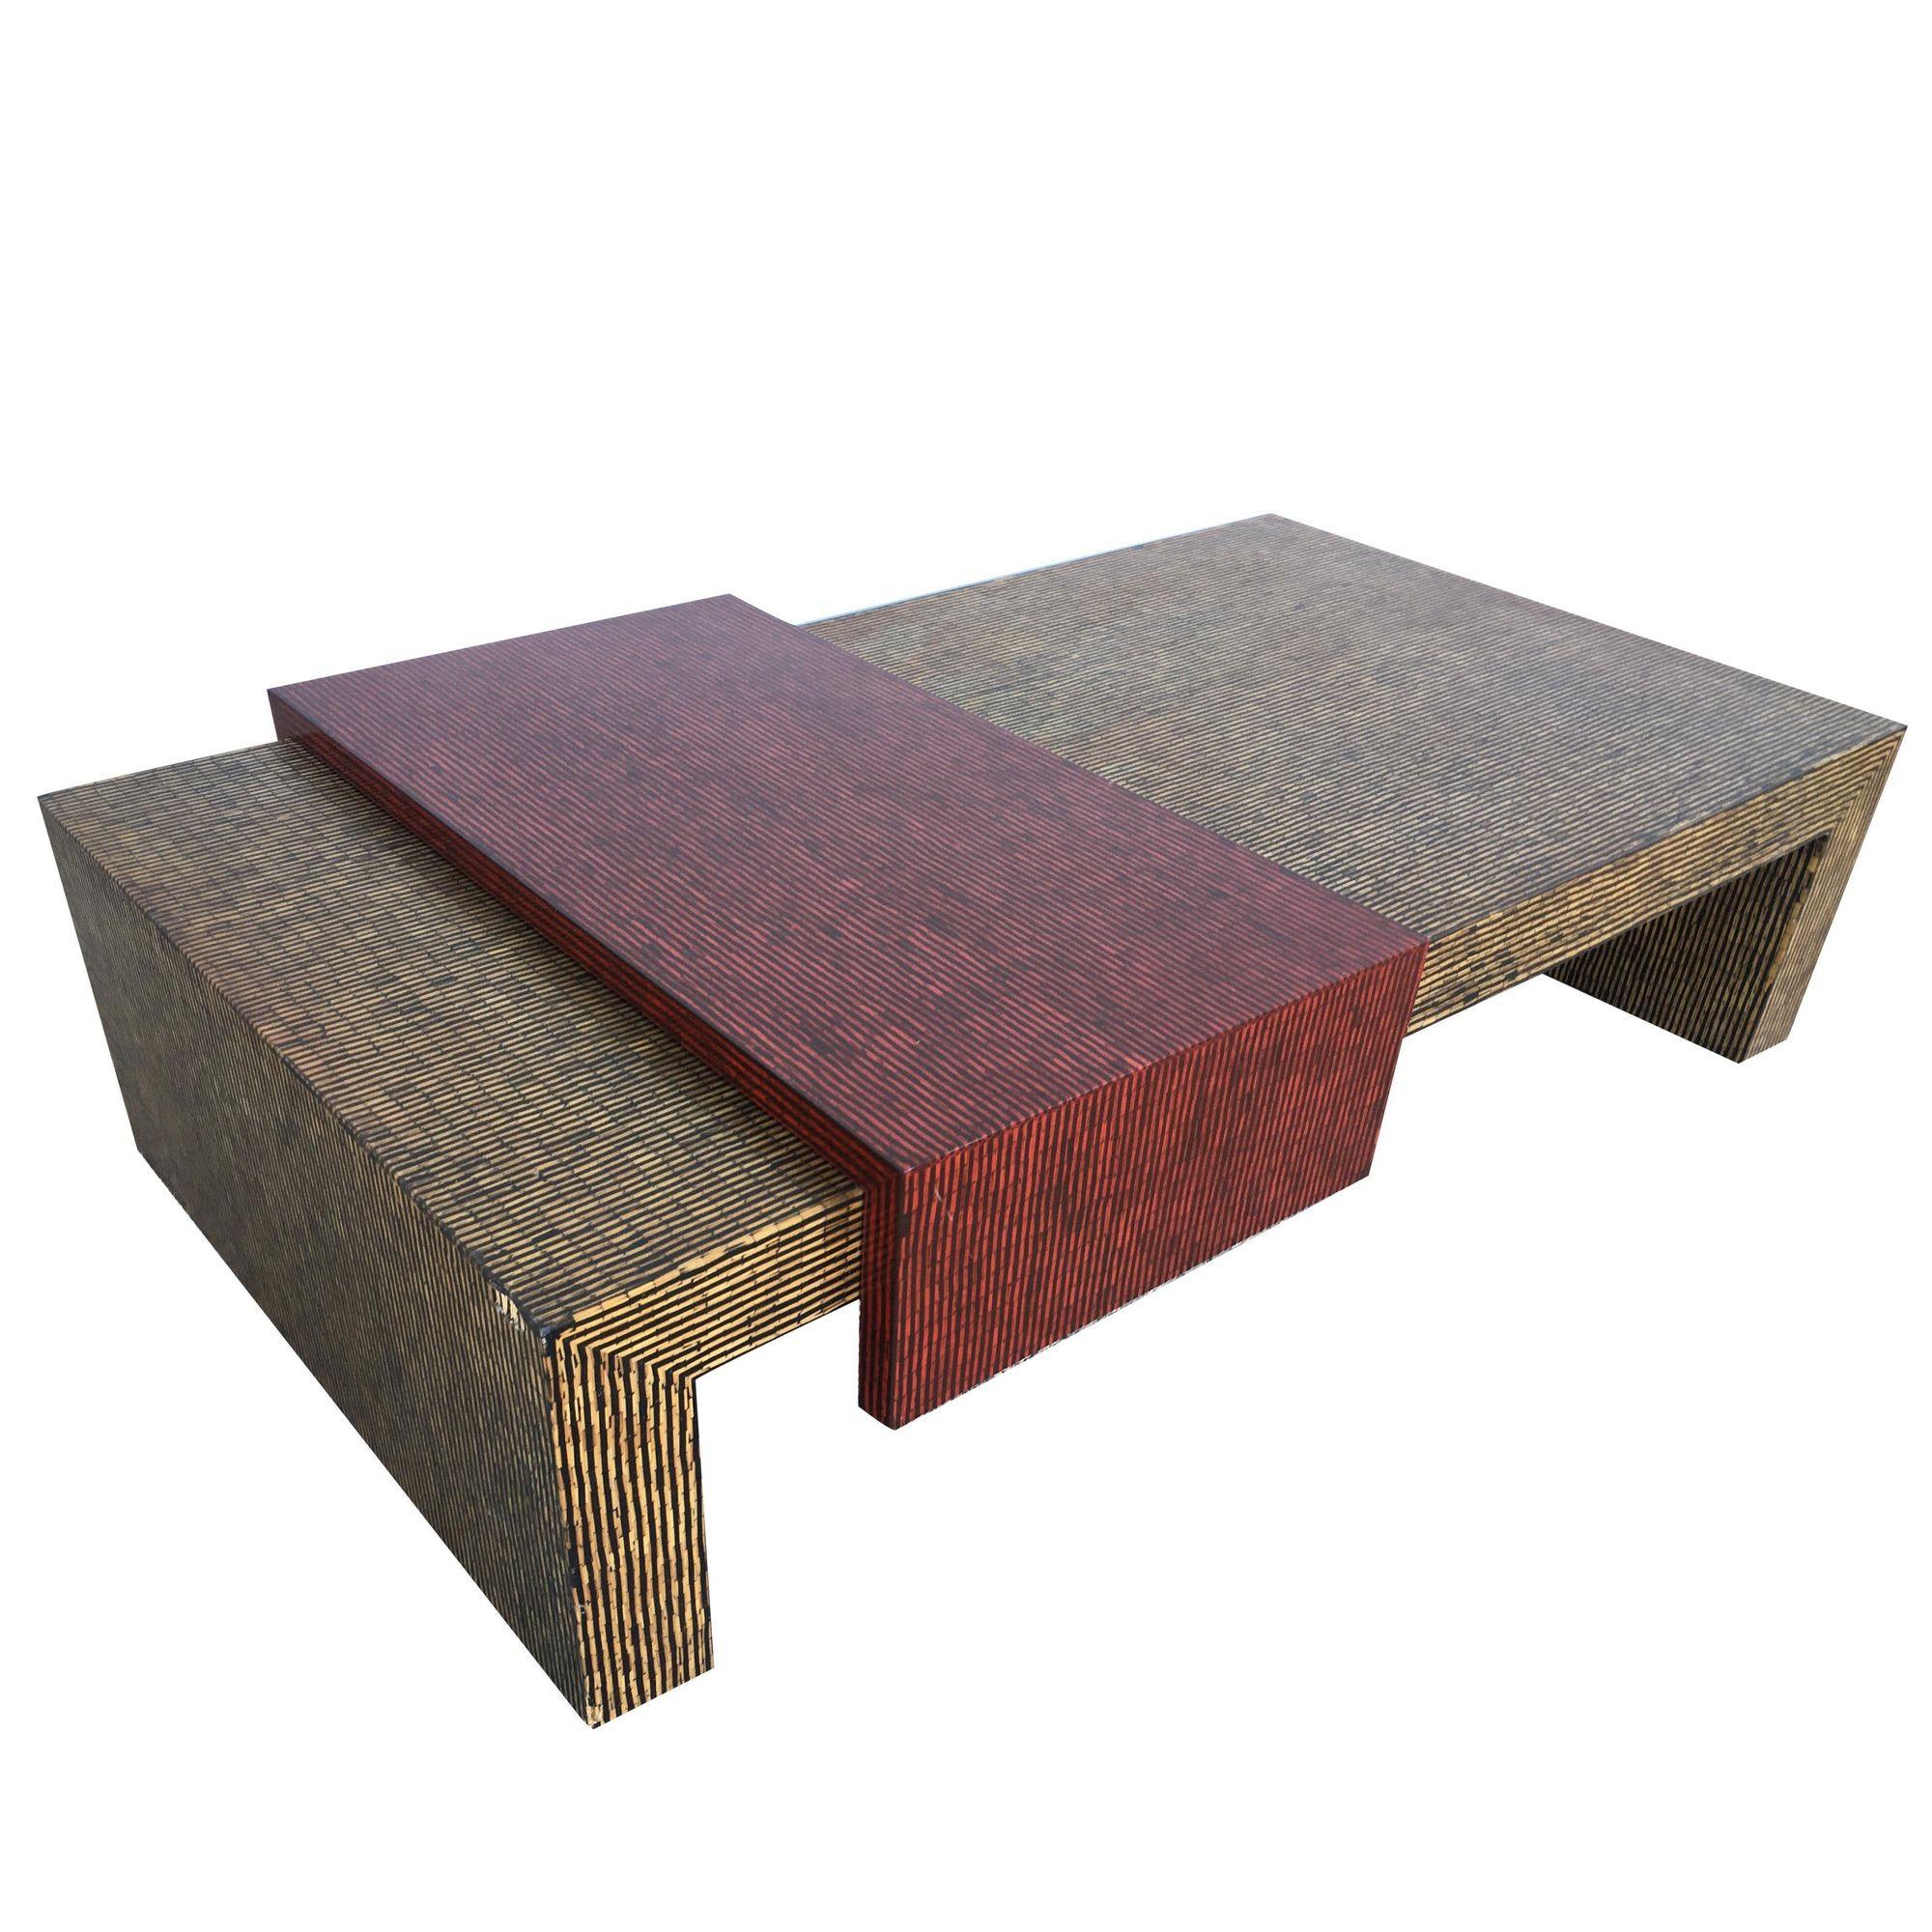 Ensemble table d'appoint et table basse de style cubiste bicolore avec plateaux en vinyle texturé rouge et beige. Tables d'appoint - H 22,5 po x L 22 po x P 19 po. Table basse - H 13,5 po x L 50,5 po x P 30,5 po.